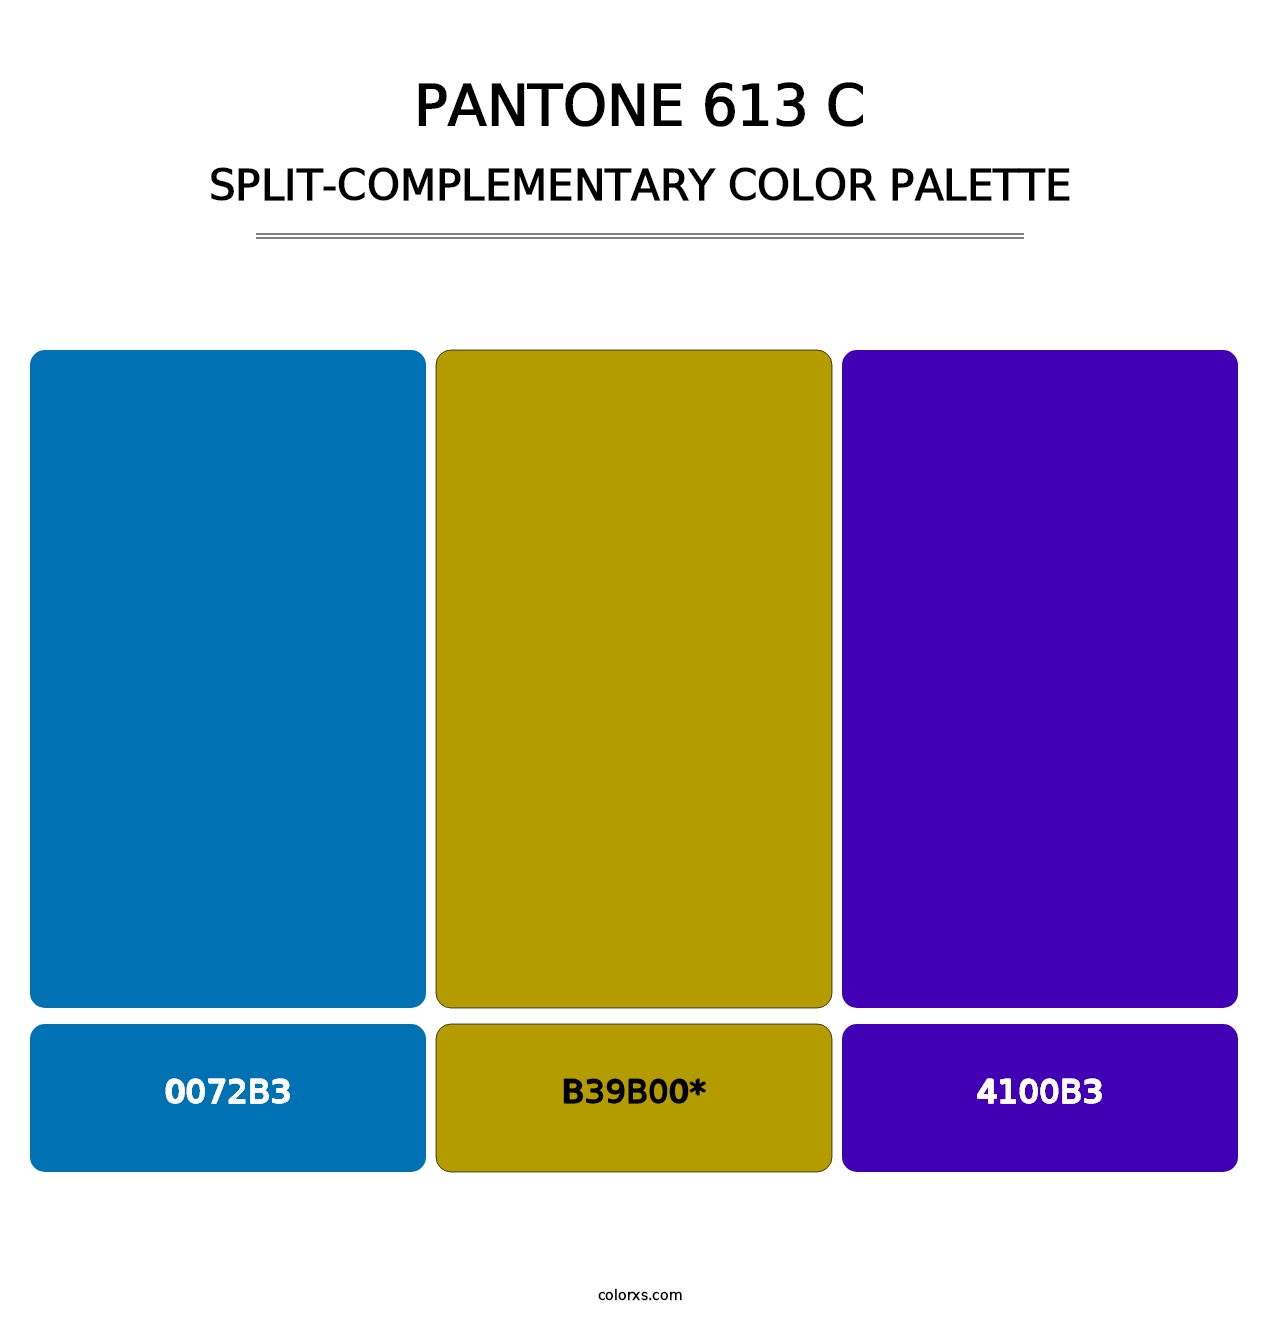 PANTONE 613 C - Split-Complementary Color Palette